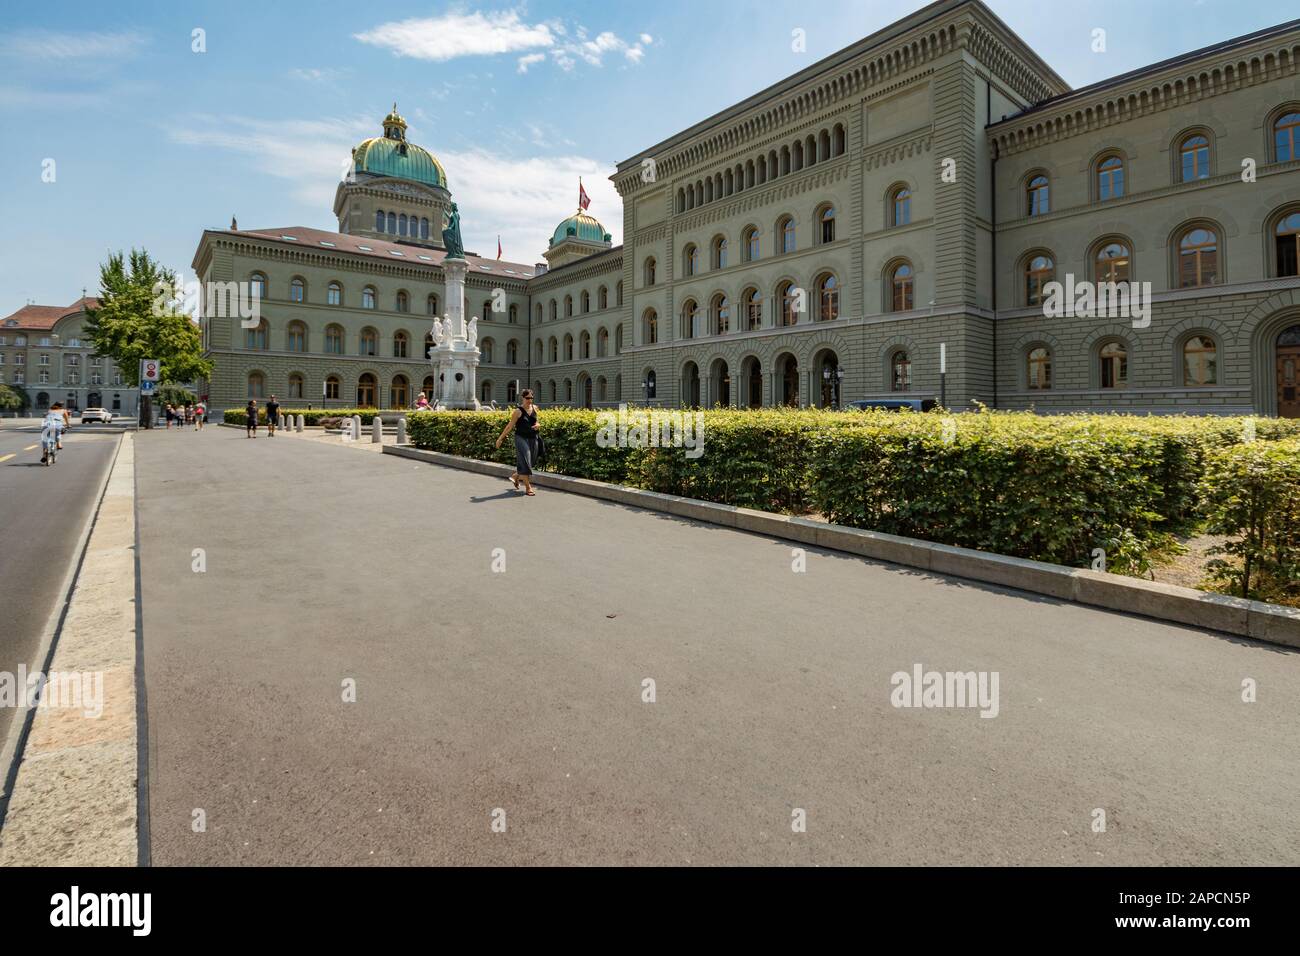 Bern, Schweiz - 26. Juli 2019: Der Westflügel des Bundespalastes der Schweiz. Schweizer kapital-parlamentsgebäude mit grünem Kuppeldach und Swis Stockfoto